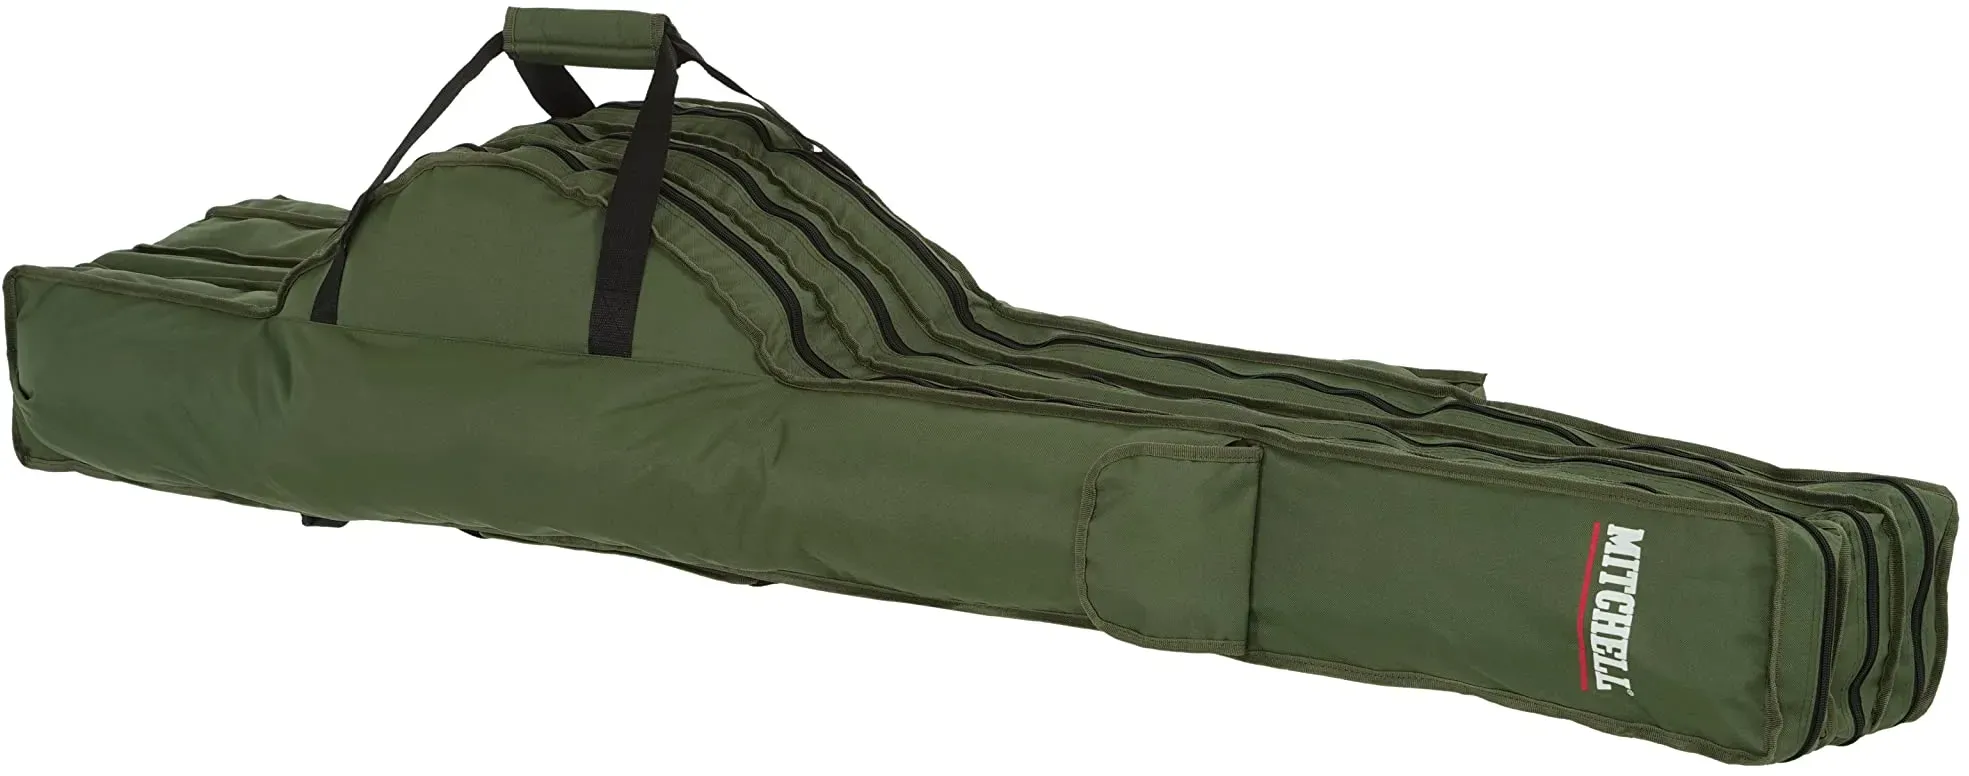 Mitchell GT Pro Tragbare Angelrutentasche aus Segeltuch – Angeltasche für Angelrute und Rollen-Sets, Organizer-Tasche für Angelzubehör, grüne Tragetasche für Ruten- und Rollenaufbewahrung